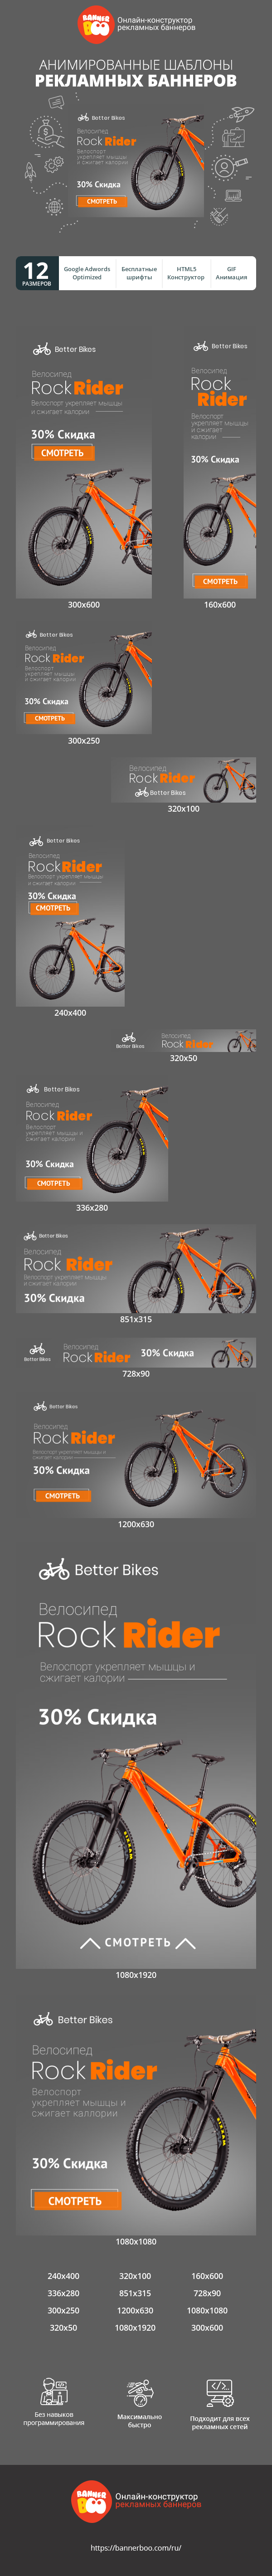 Шаблон рекламного банера — Велосипед Rock Rider — Велоспорт укрепляет мышцы и сжигает калории